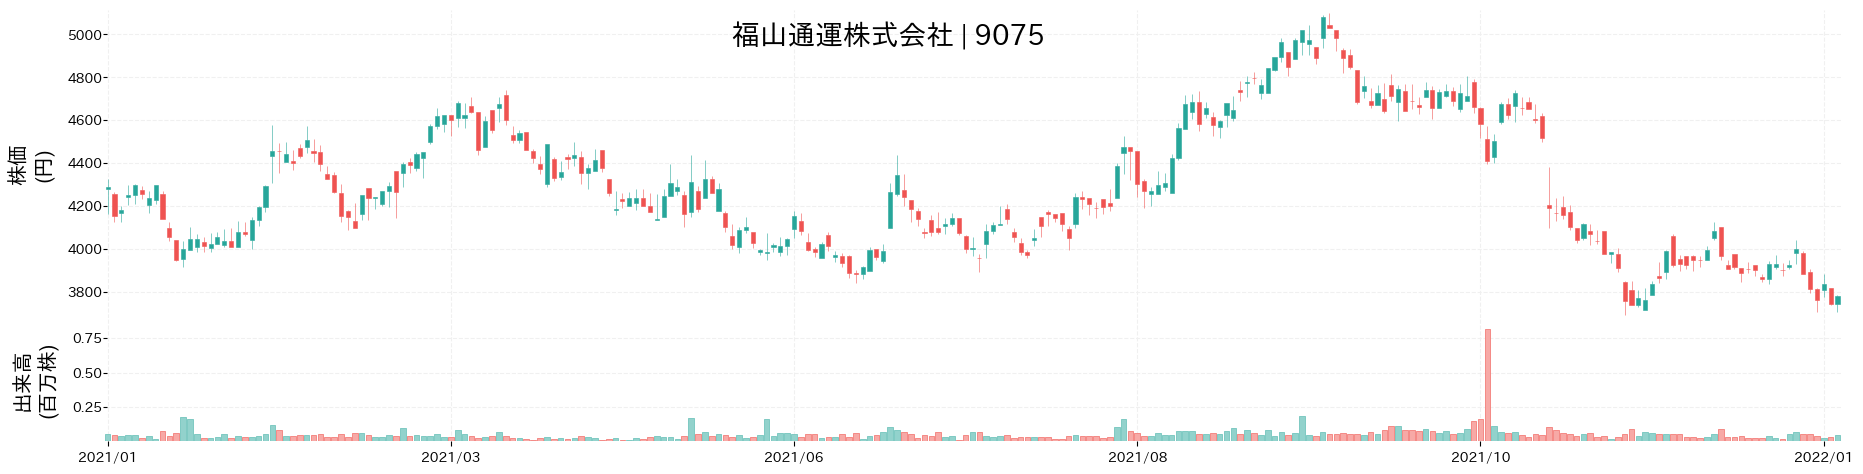 福山通運の株価推移(2021)